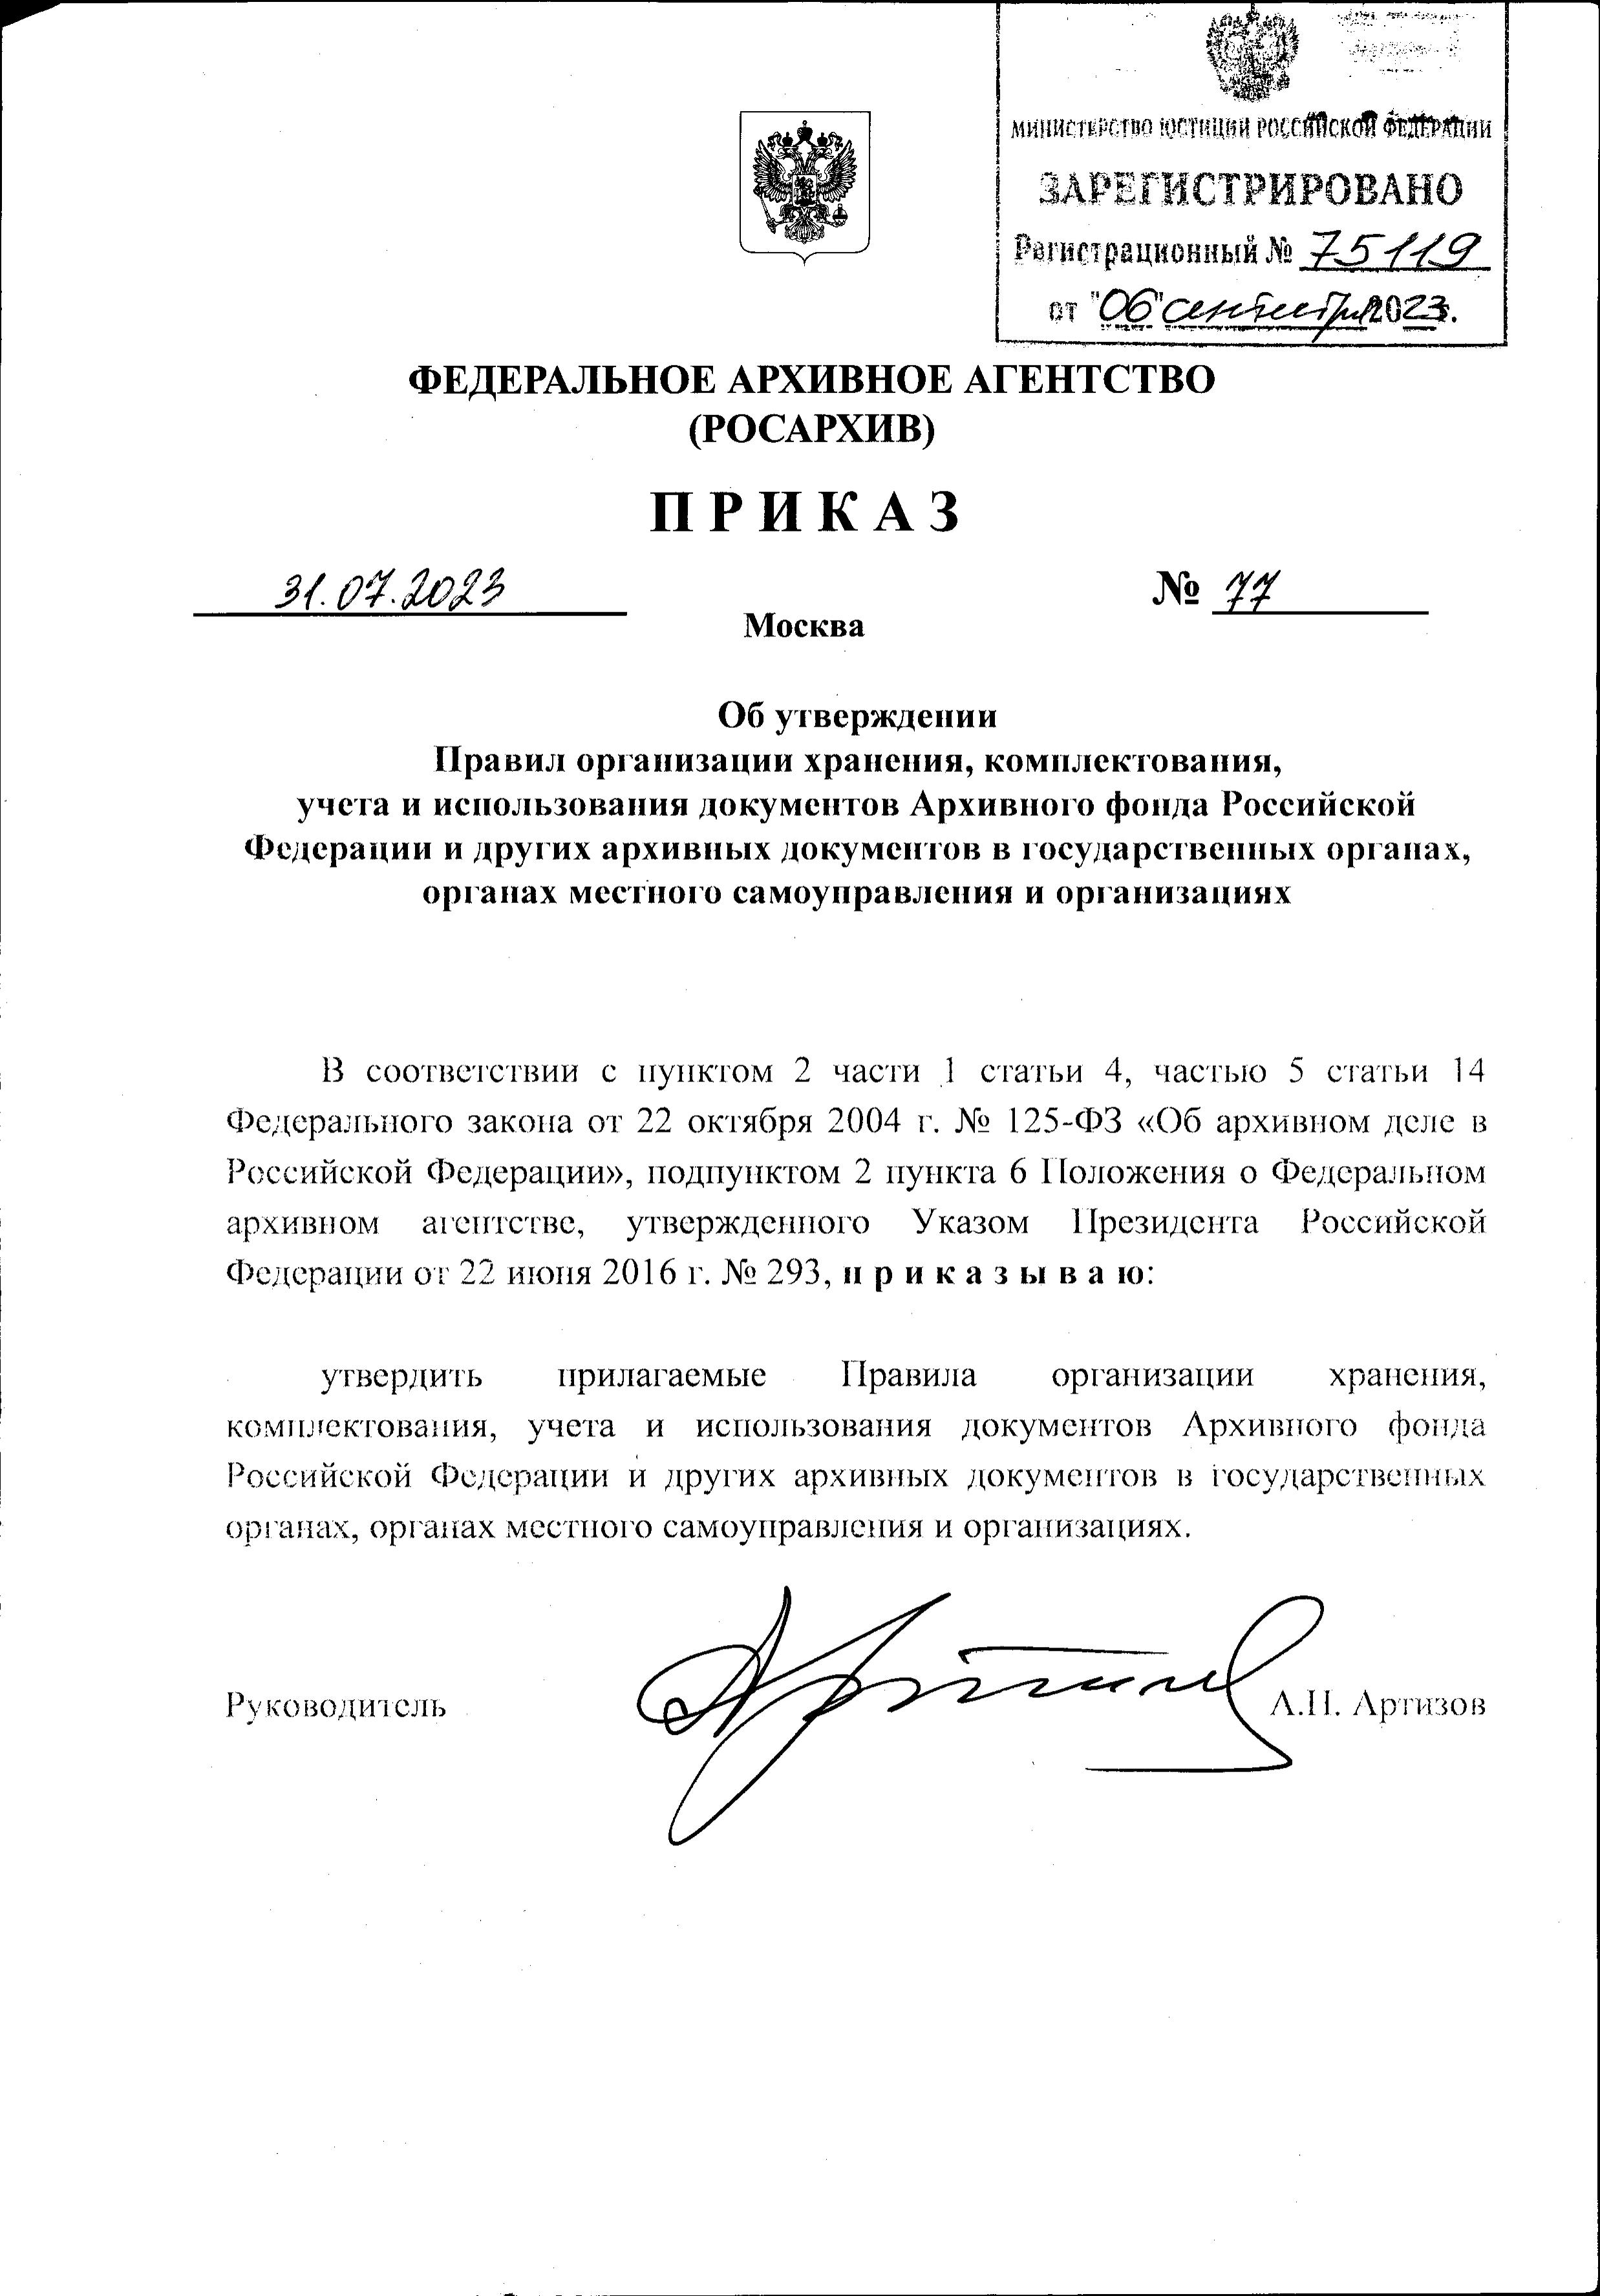 ВНИМАНИЕ! Утверждены новые Правила организации хранения документов Архивного фонда РФ